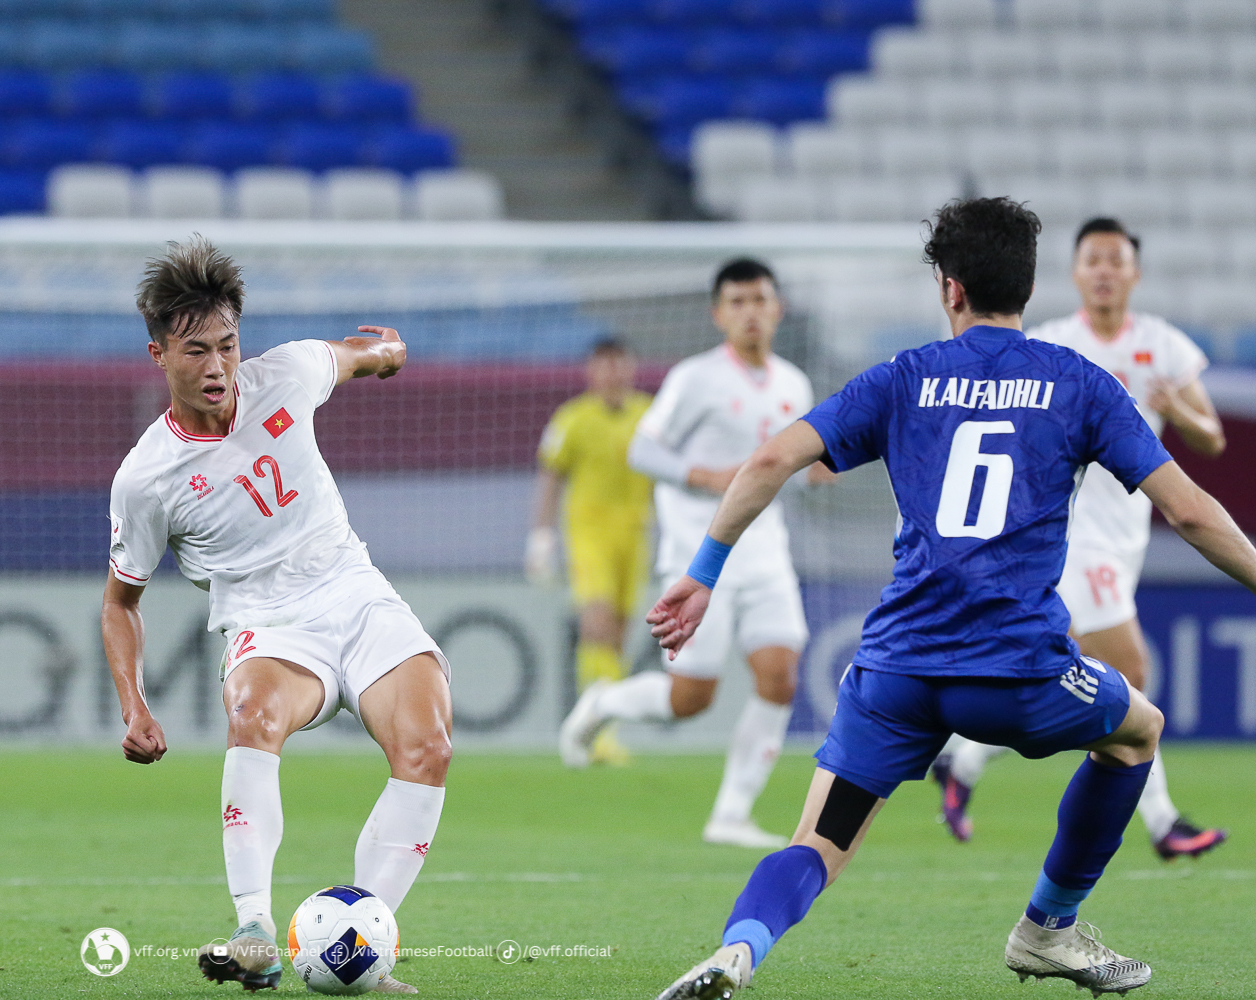 Báo Kuwait lên tiếng về trình độ của U23 Việt Nam - ảnh 1